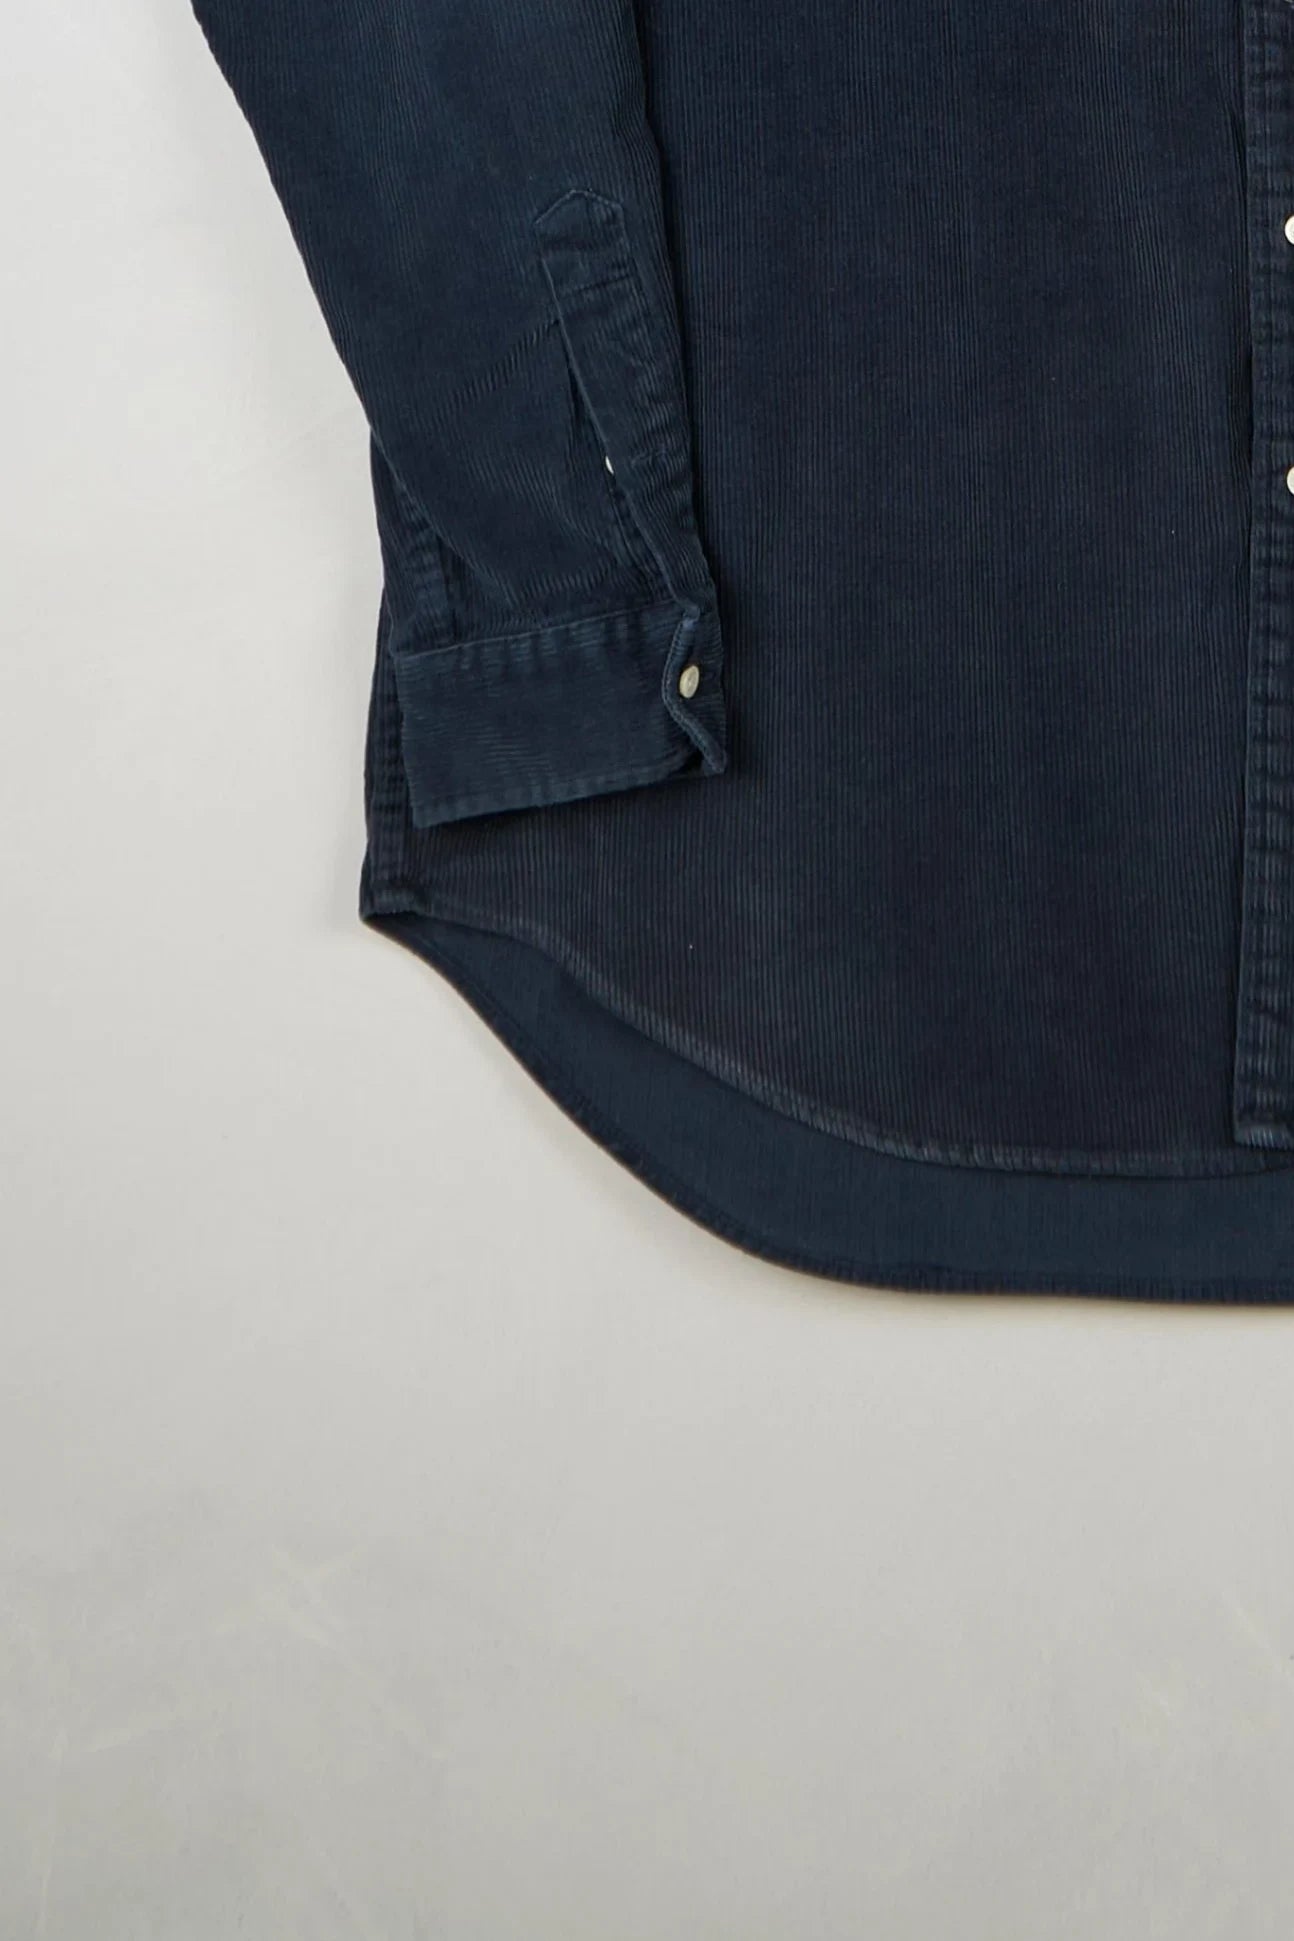 Ralph Lauren - Corduroy Shirt (XL) Bottom Left